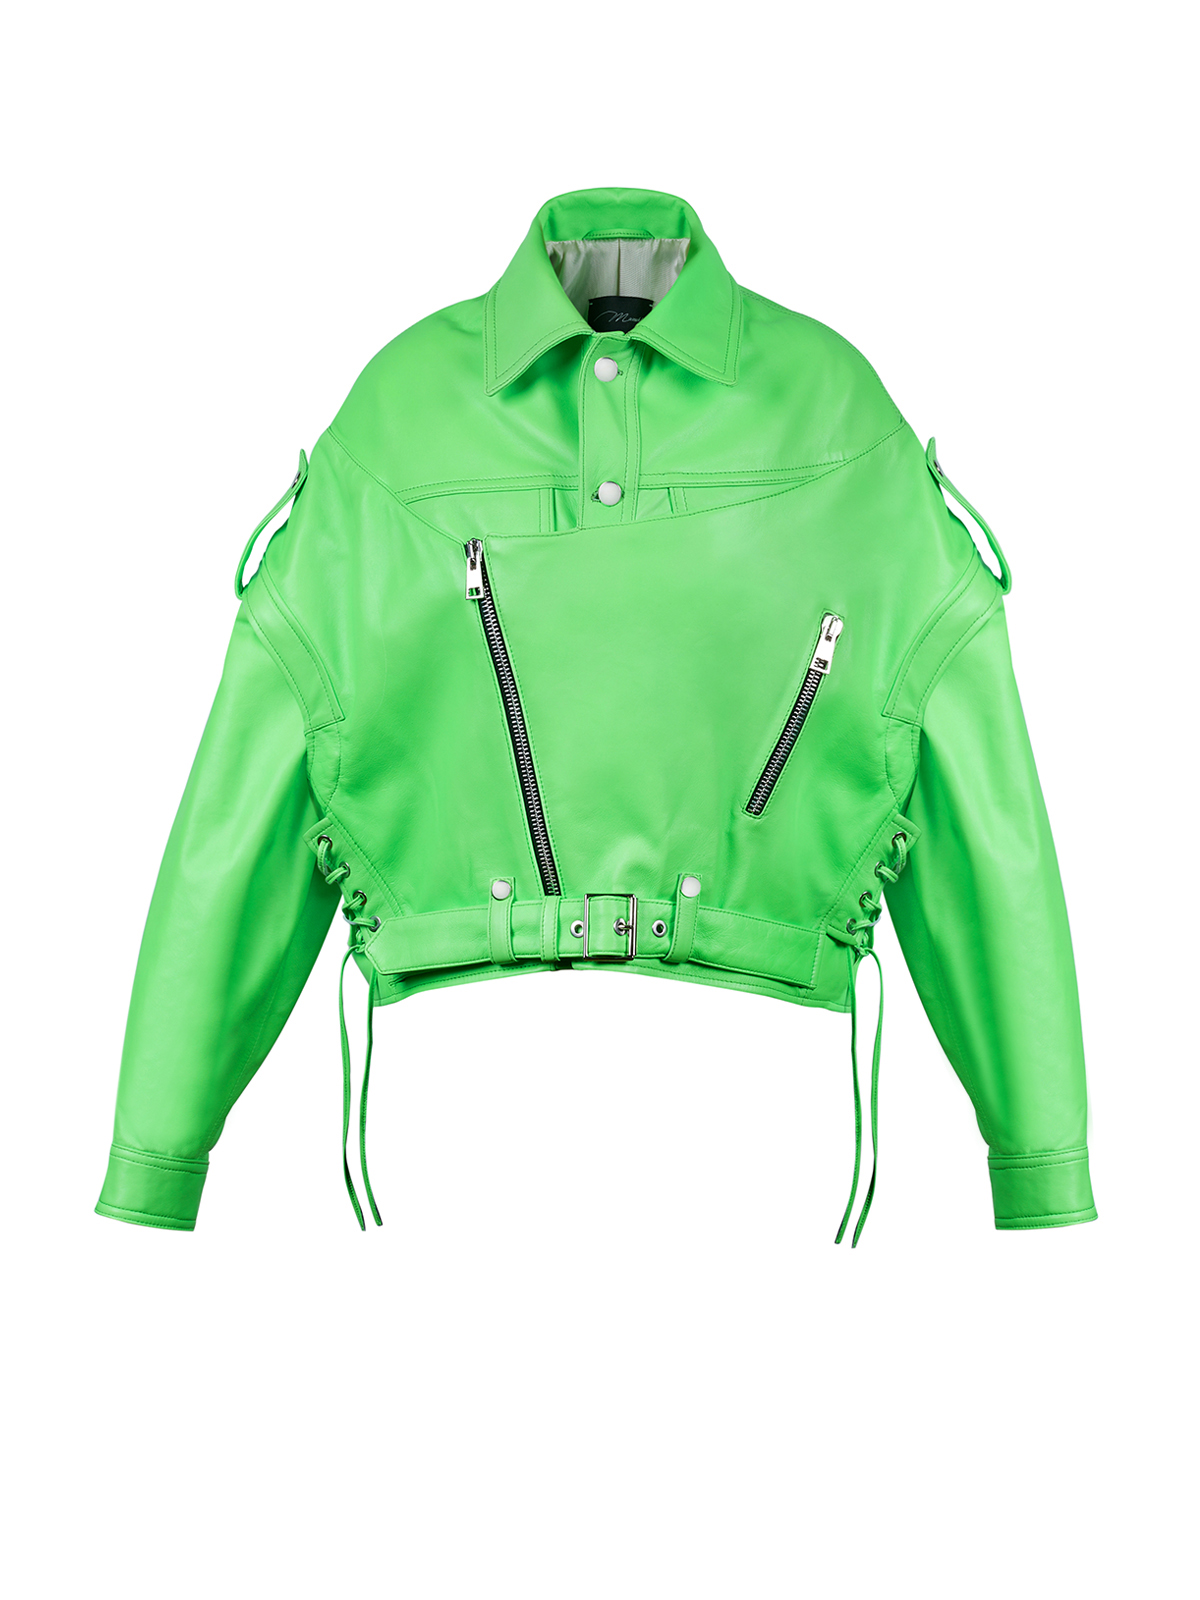 neon green biker jacket